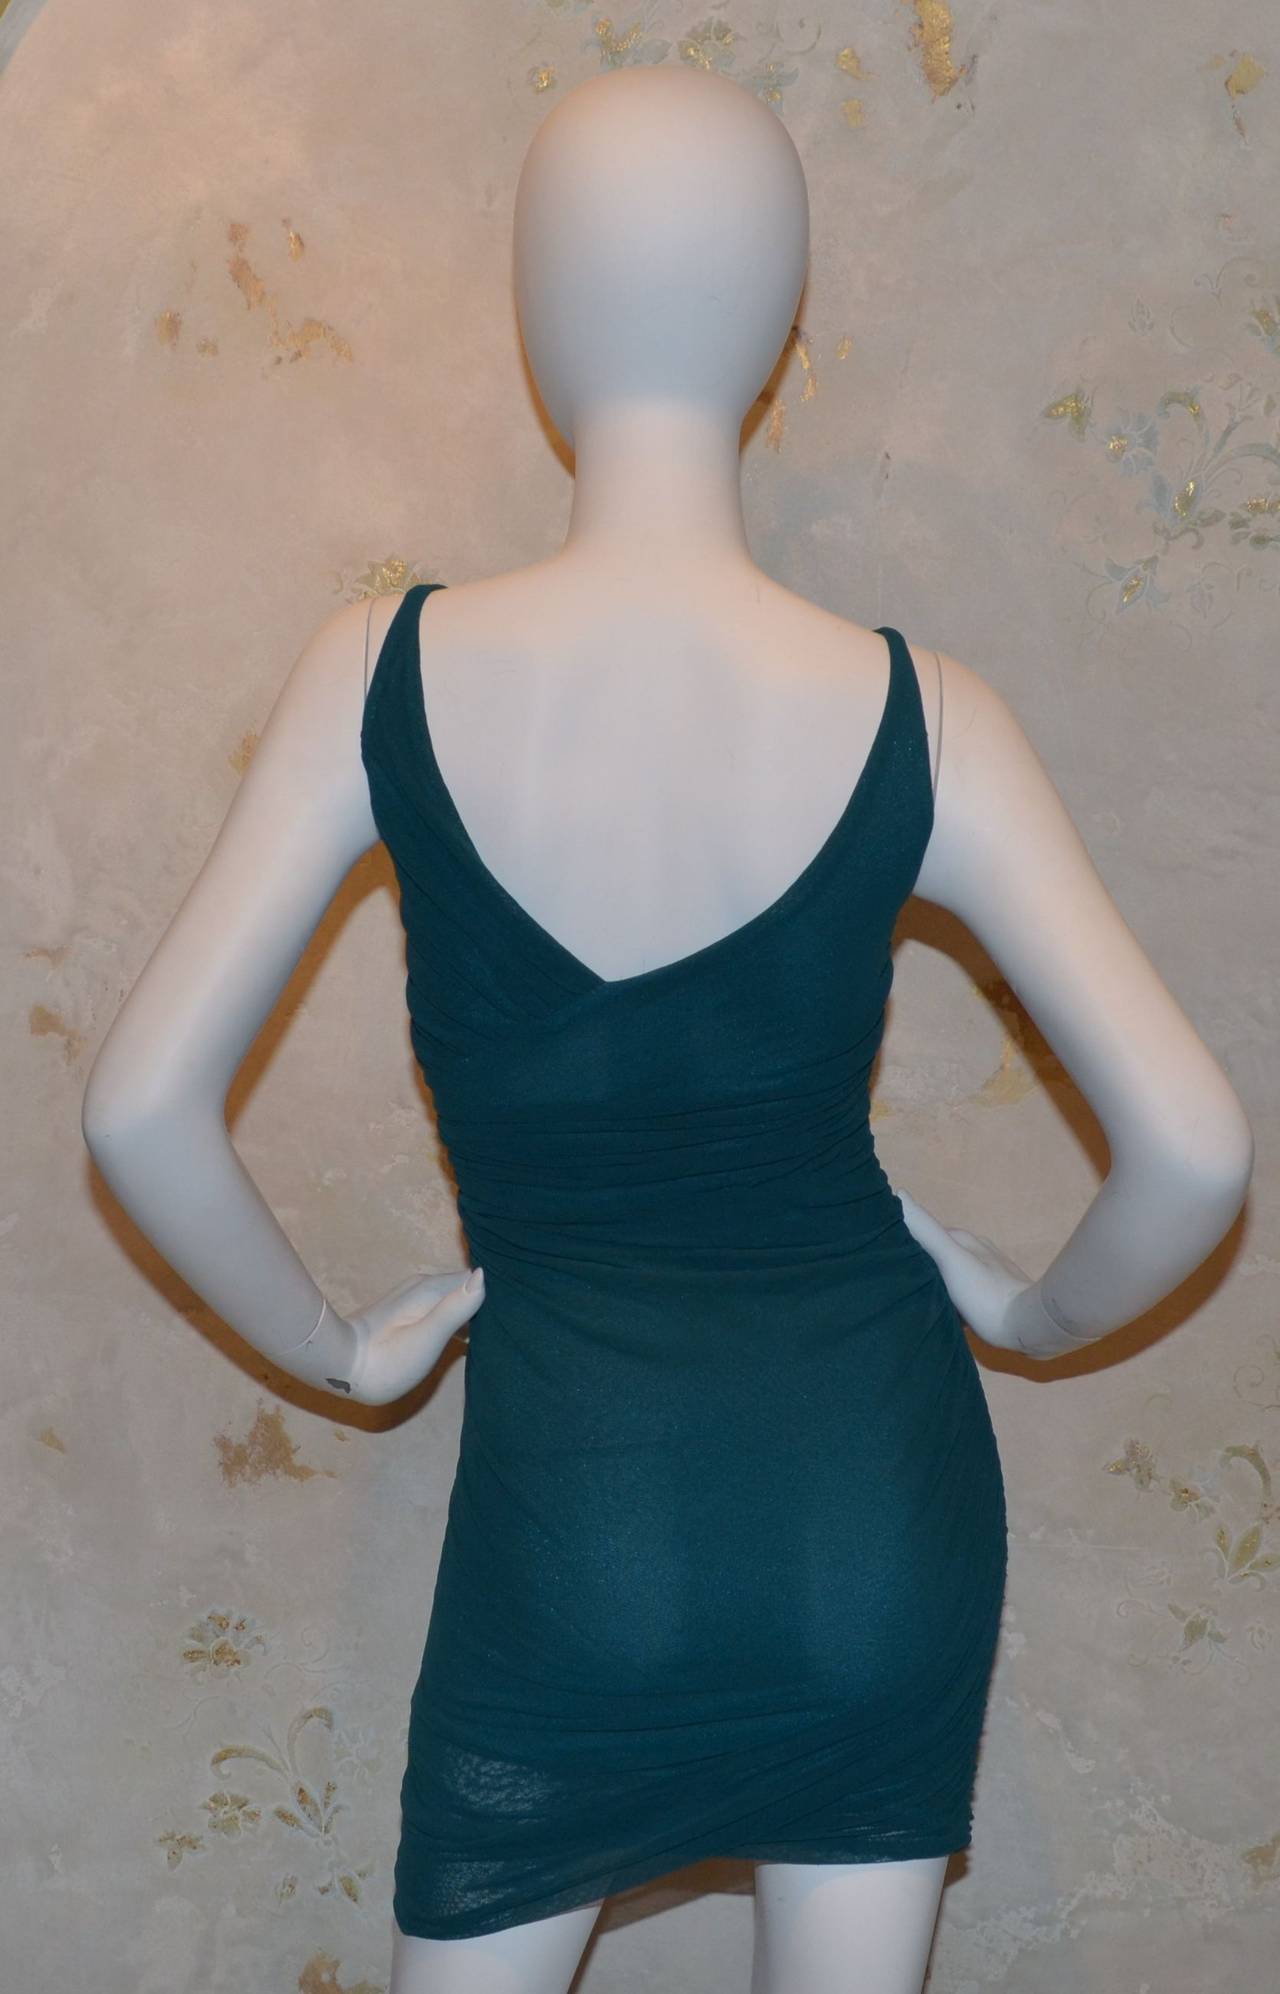 Giorgio di Sant Angelo Robe débardeur des années 1980 en lycra extensible à mailles, tricoté en bas de corps. La robe est une petite taille et convient à notre mannequin qui mesure un buste de 34 pouces, une taille de 25 pouces et une hanche de 37